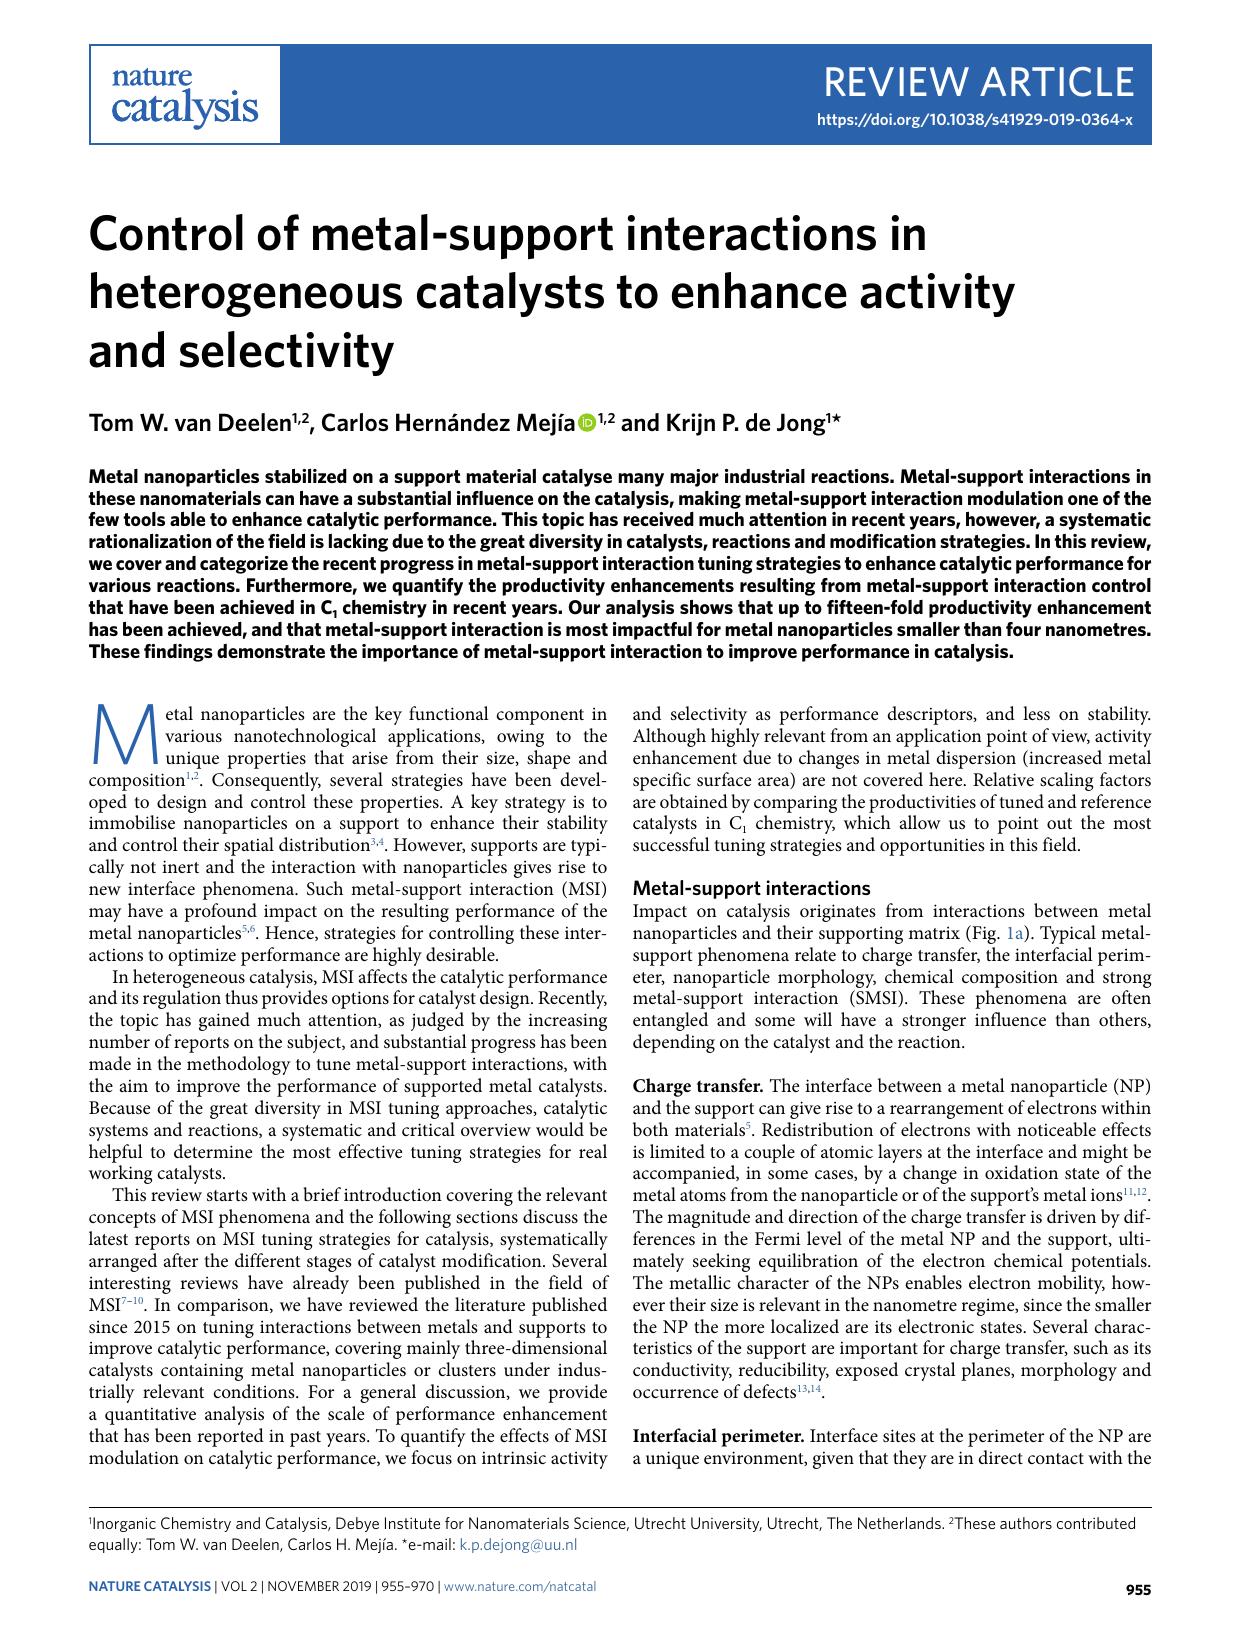 Control of metal-support interactions in heterogeneous catalysts to enhance activity and selectivity by Tom W. Deelen & Carlos Hernández Mejía & Krijn P. Jong